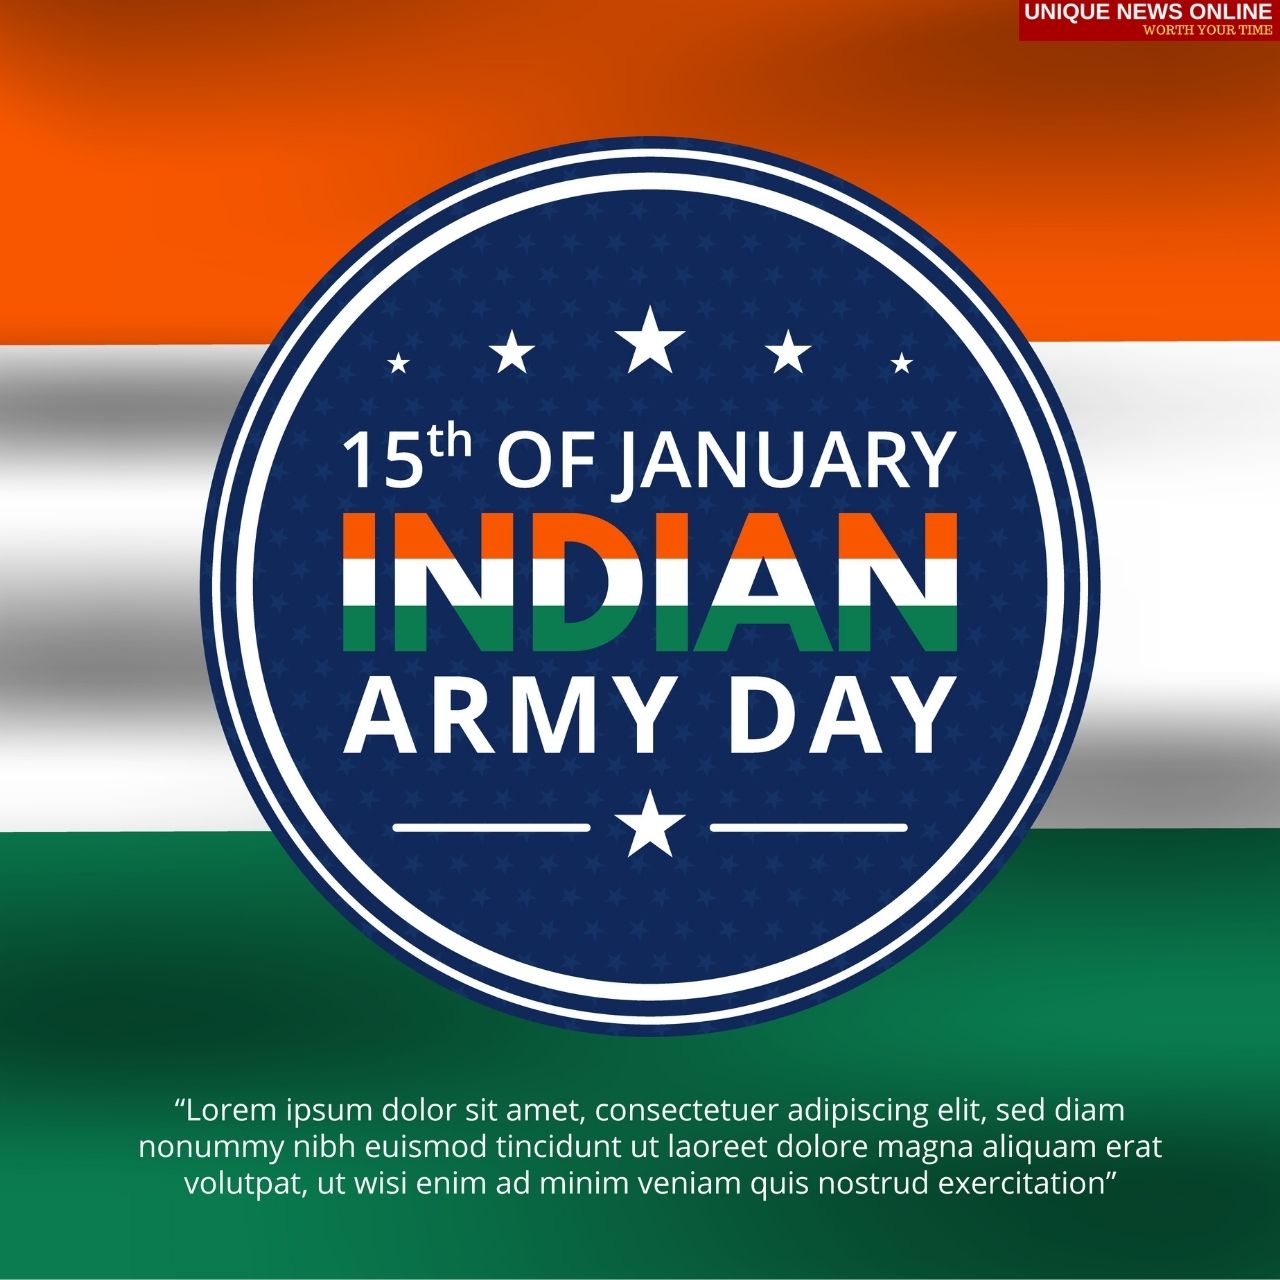 भारतीय लष्कर दिन 2022 शुभेच्छा, कोट, HD प्रतिमा, घोषणा, संदेश, शुभेच्छा, आमच्या सैनिकांचा सन्मान करण्यासाठी म्हणी